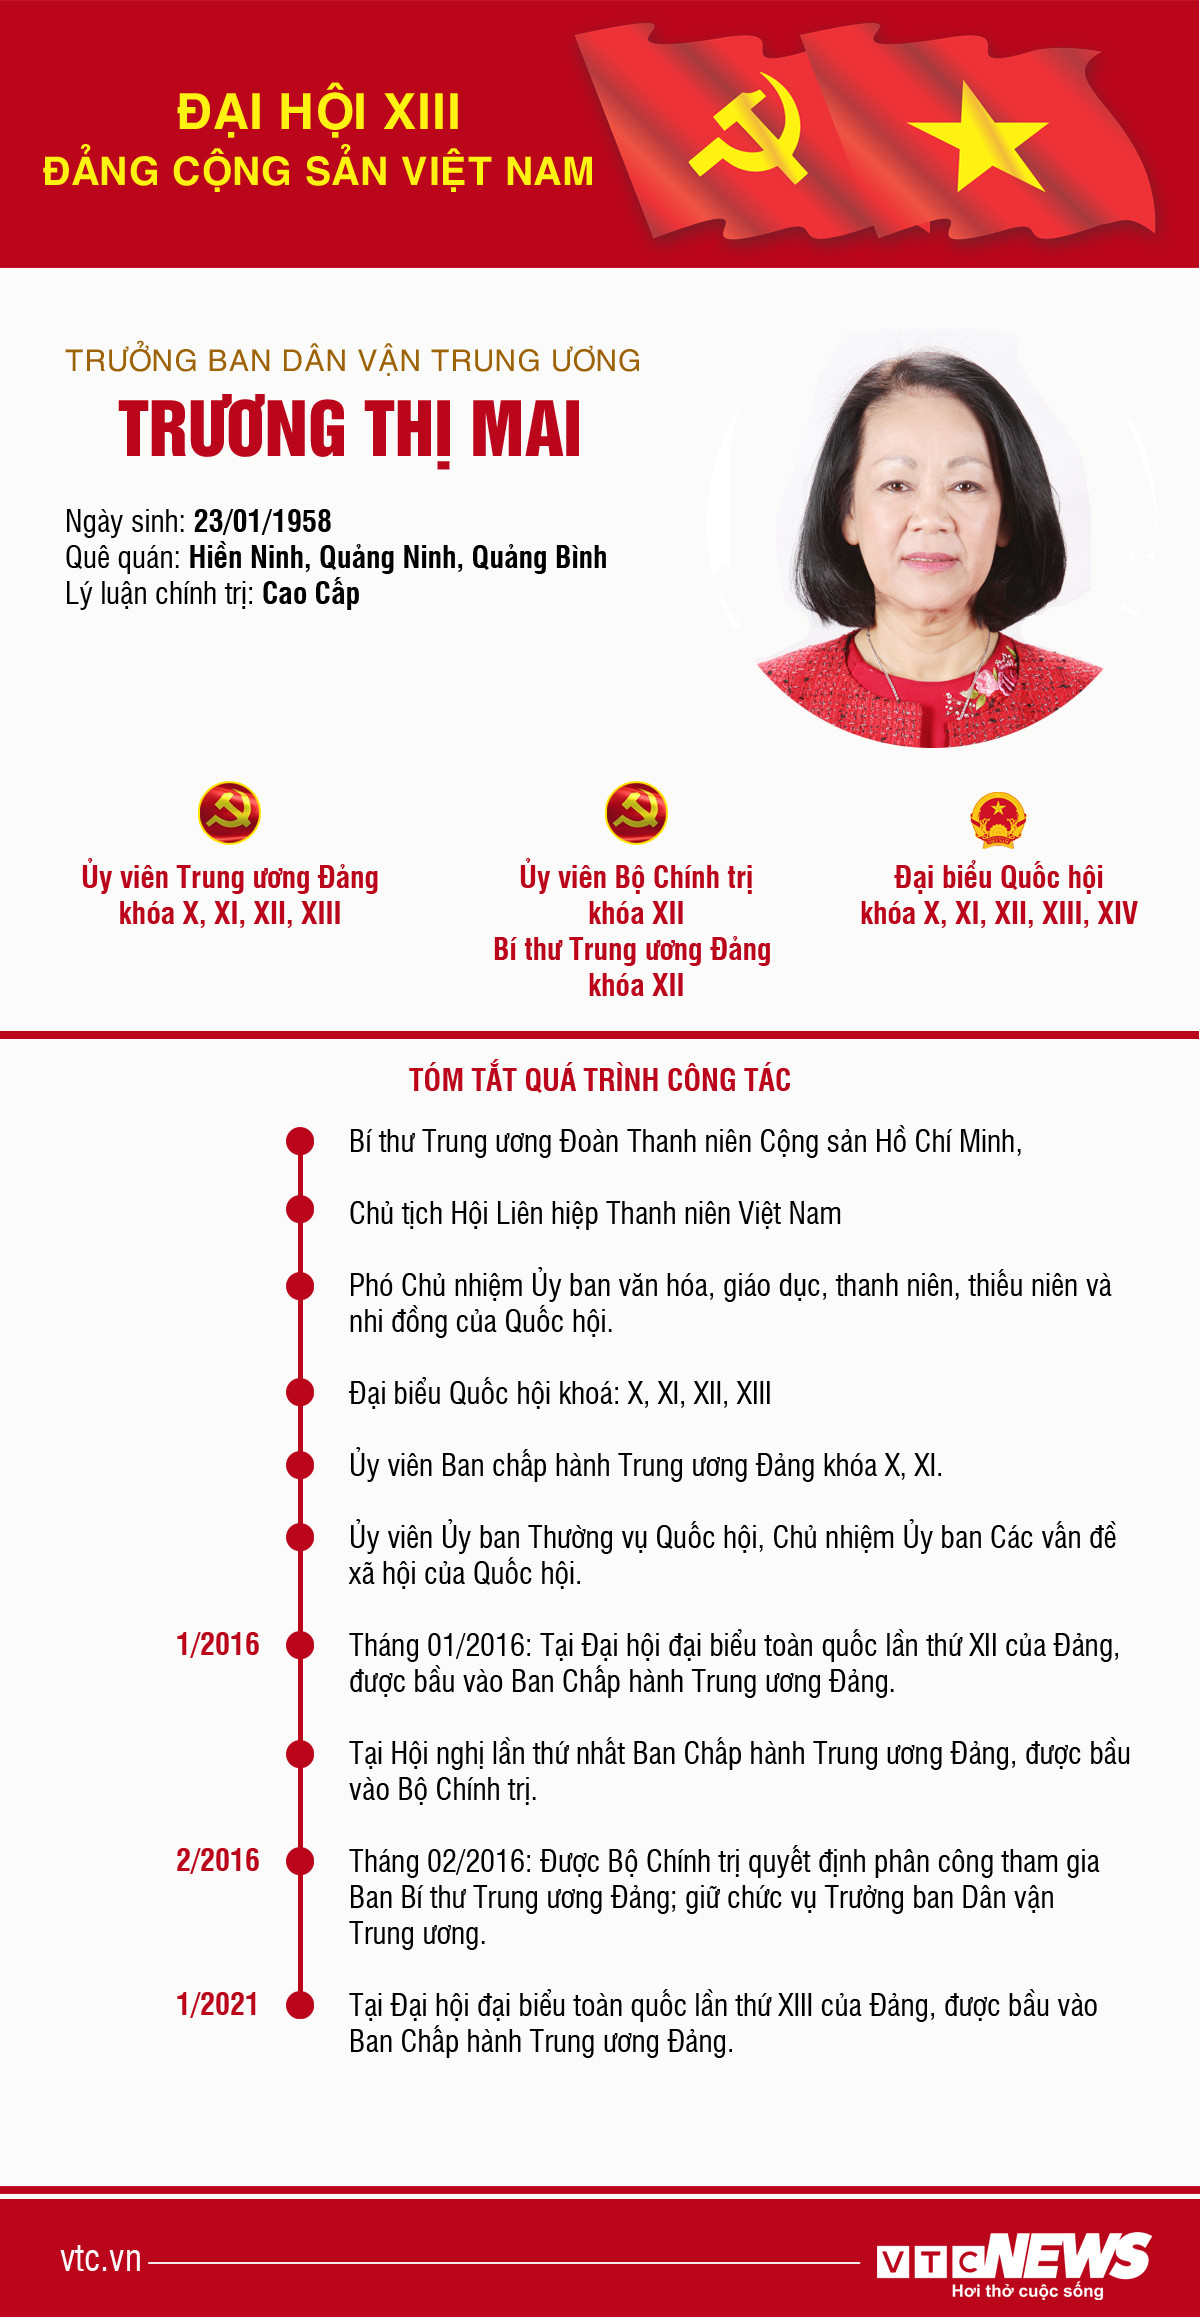 Infographic: Sự nghiệp Trưởng Ban Dân vận Trung ương Trương Thị Mai - 1